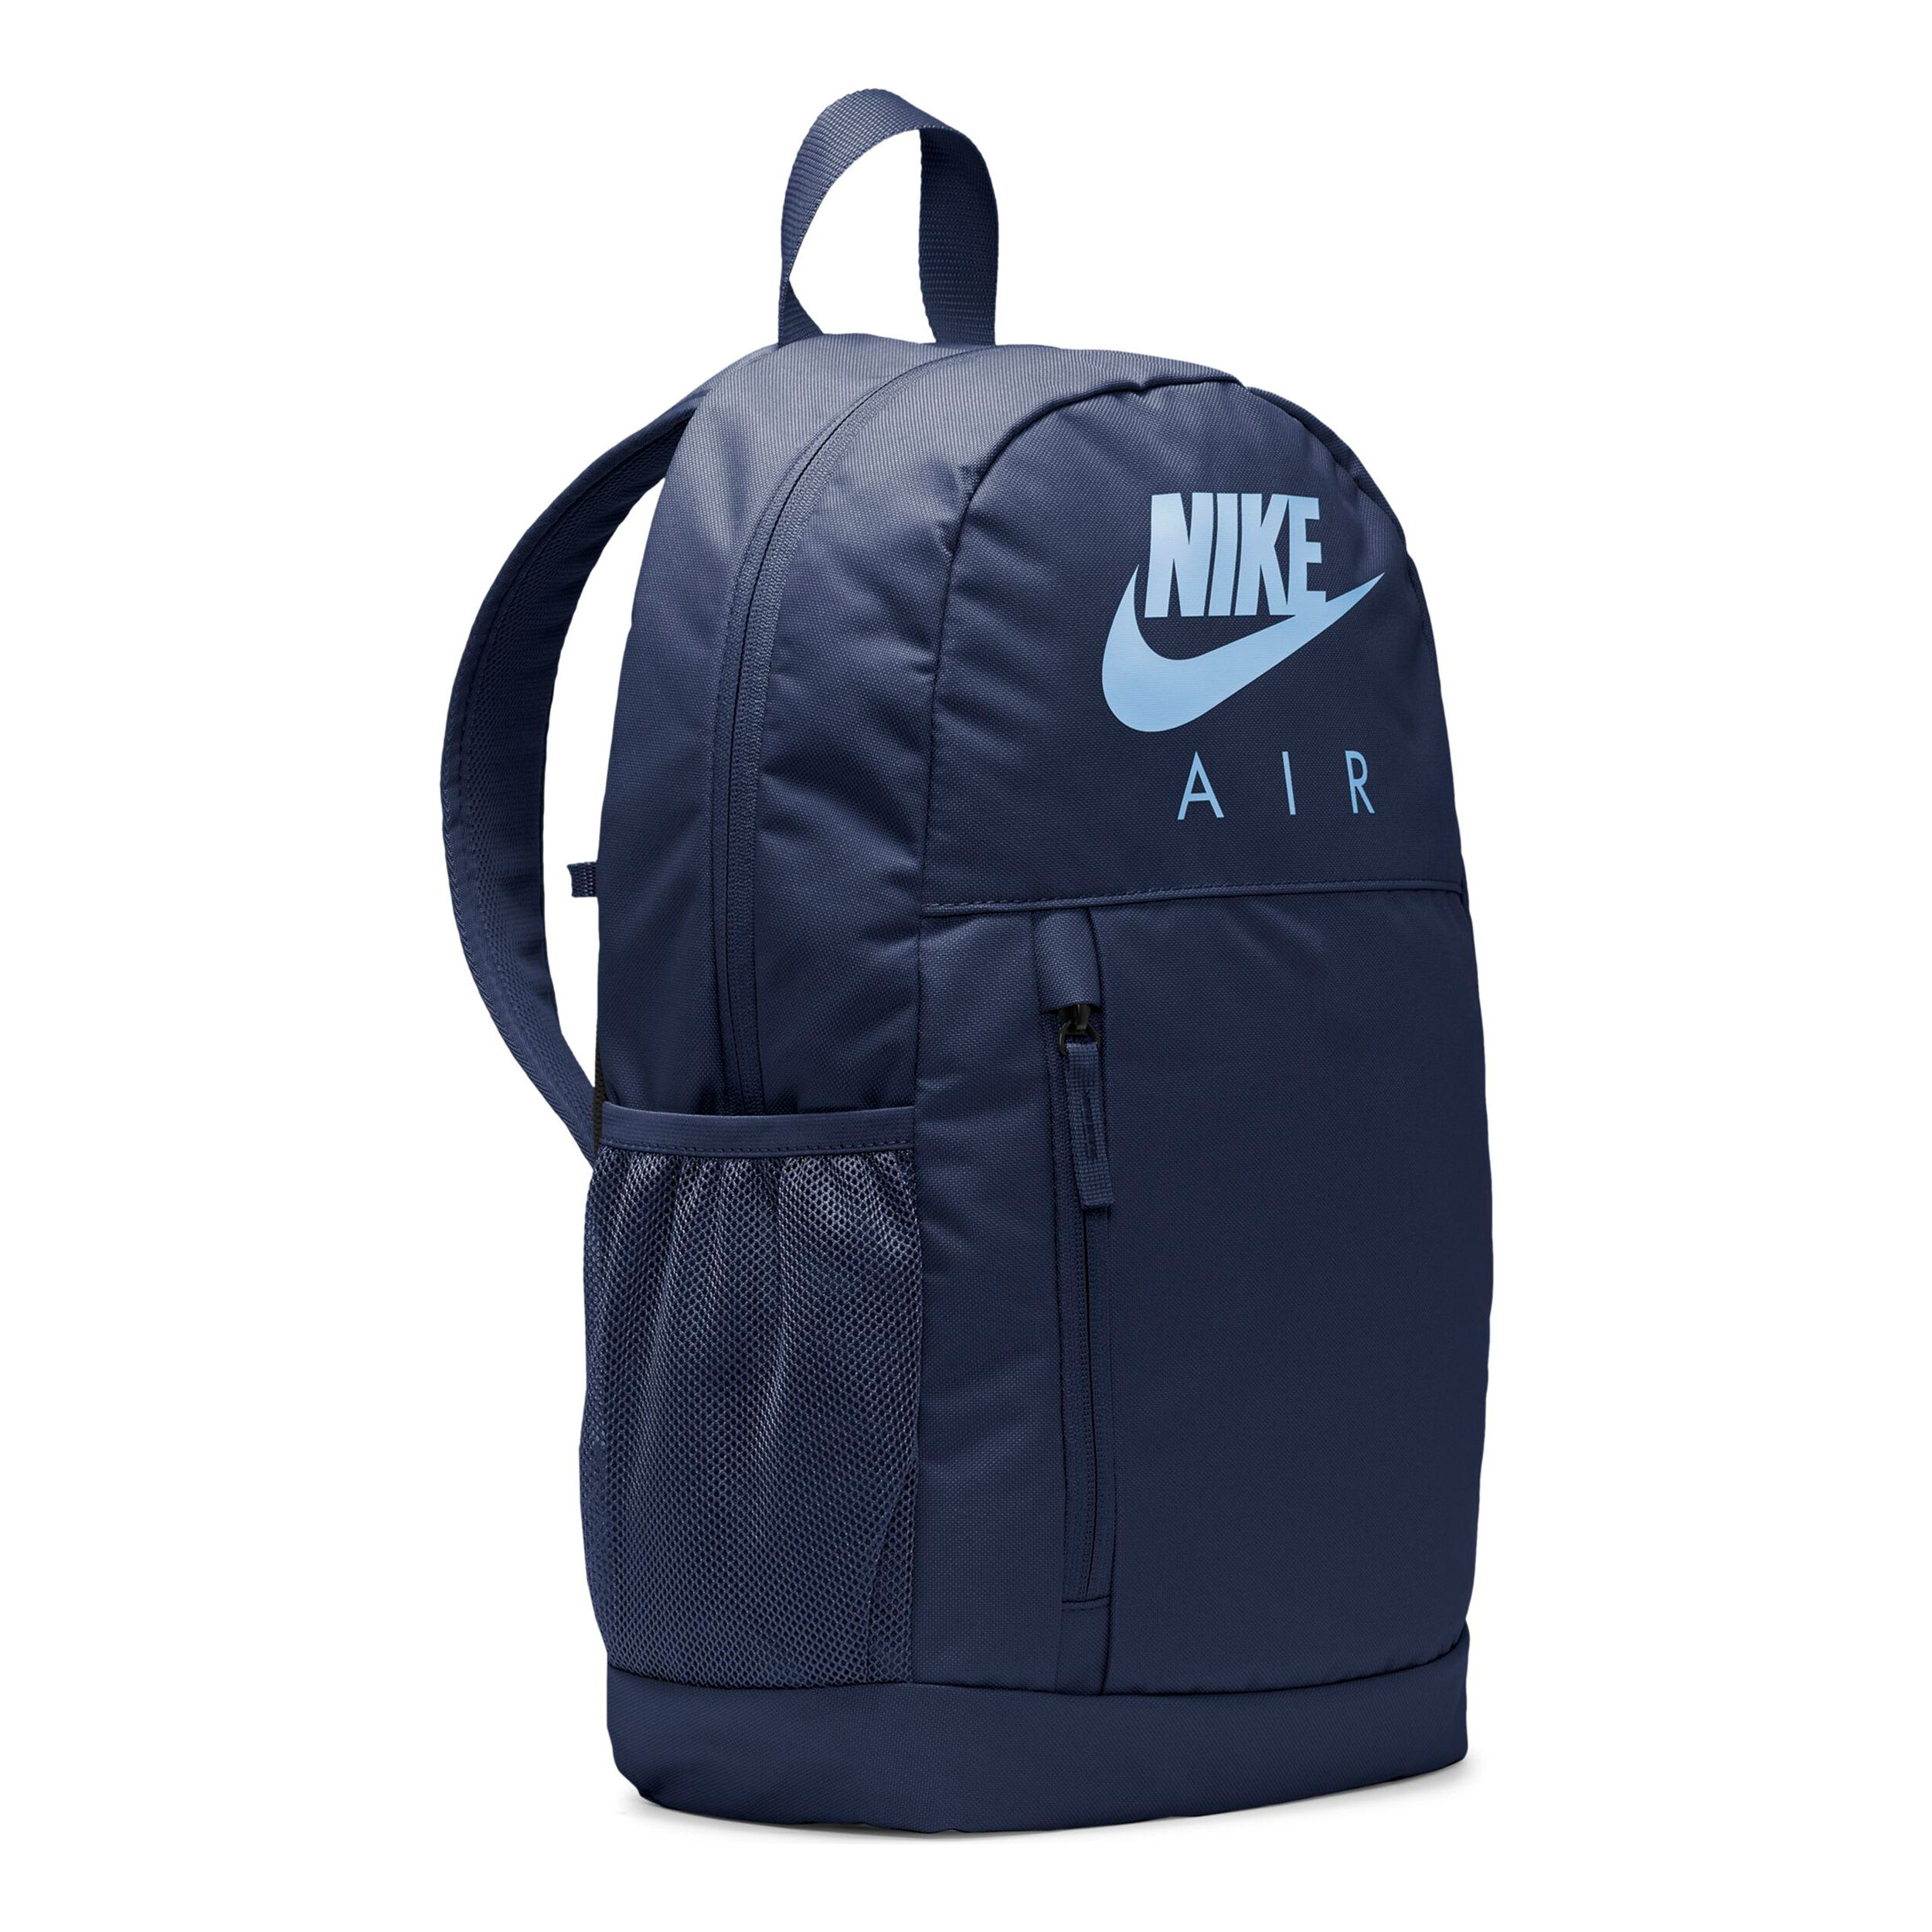 Nike Brasilia JDI mini backpack in blue | ASOS